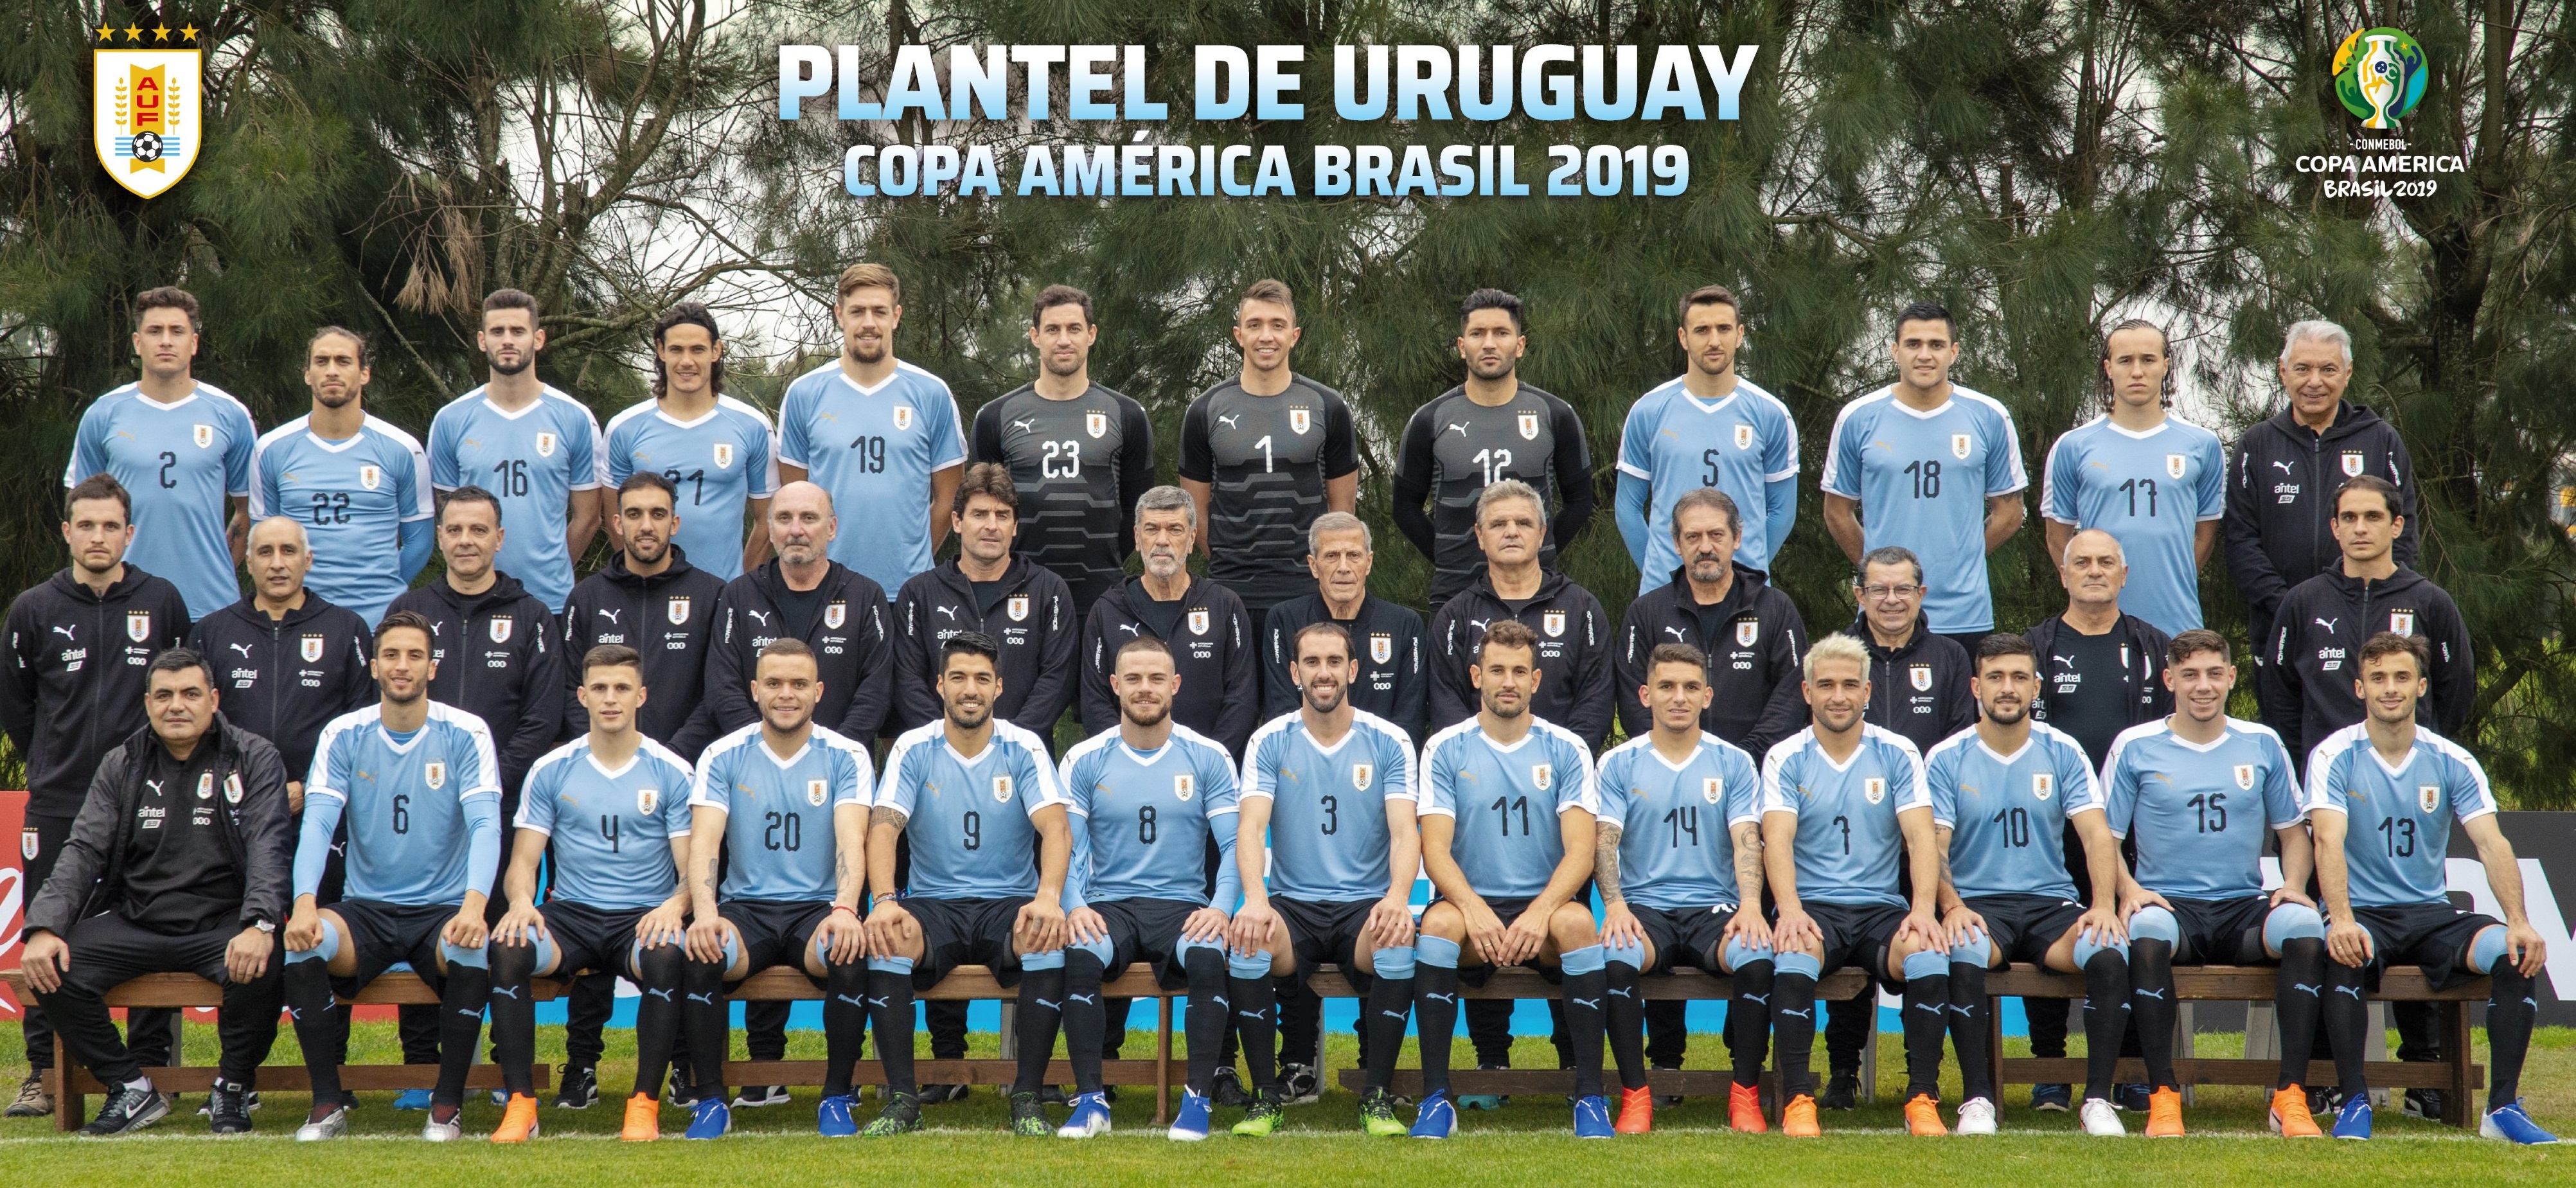 Copa América Uruguay posó para la foto oficial previo a la partida